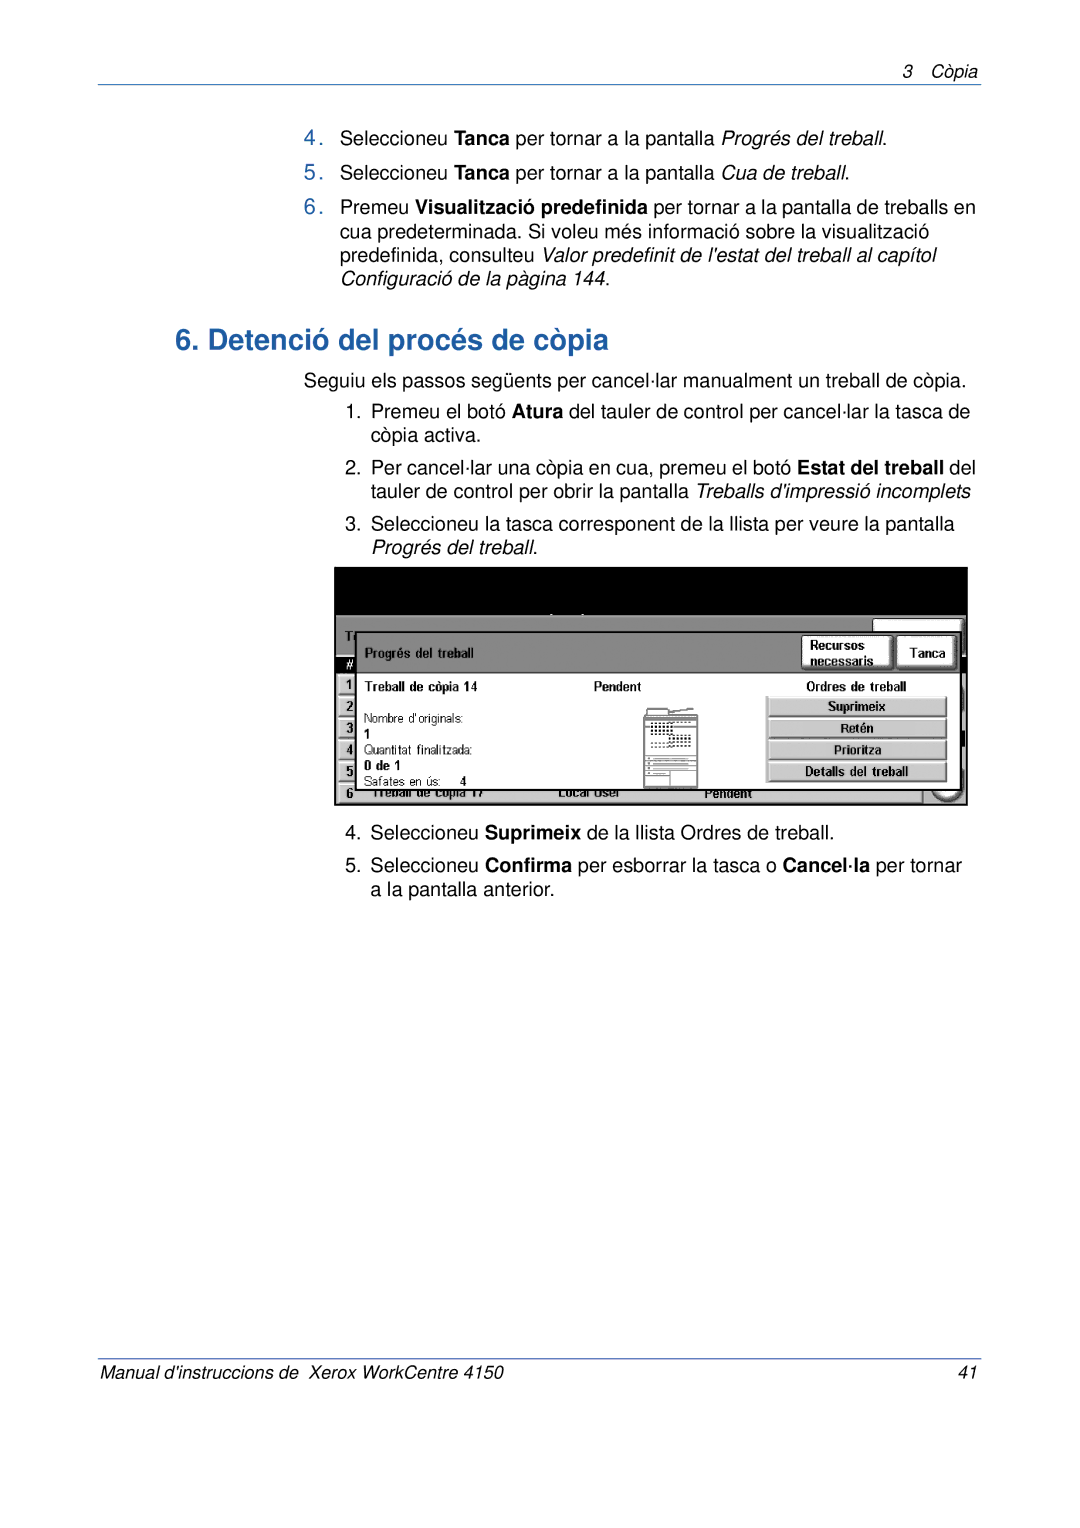 Xerox 5.0 24.03.06 manual Detenció del procés de còpia 